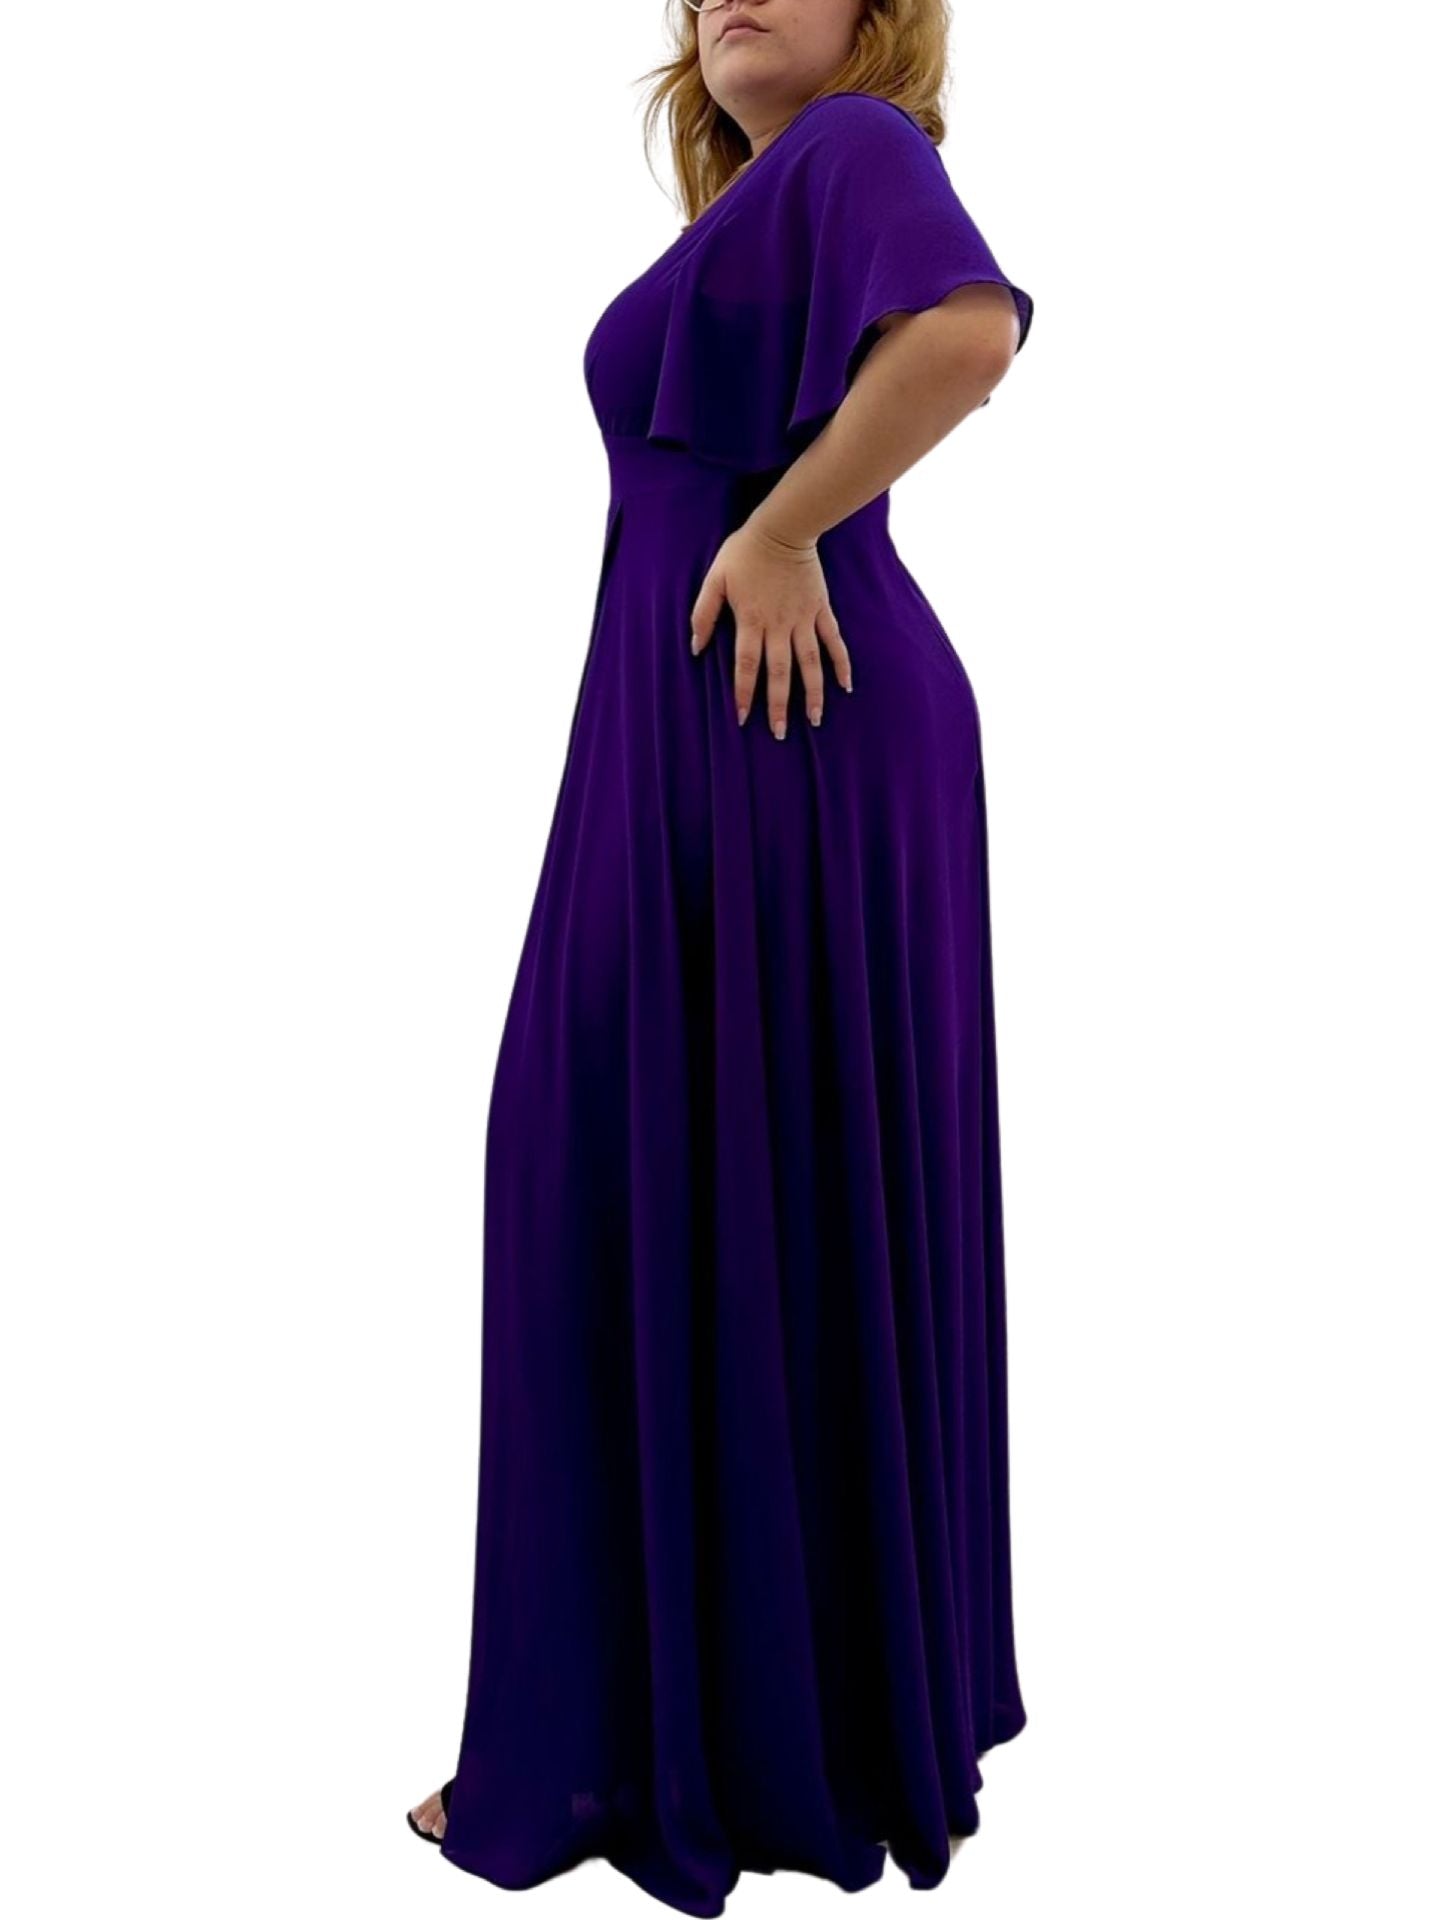 Long dress 1390 Plus size